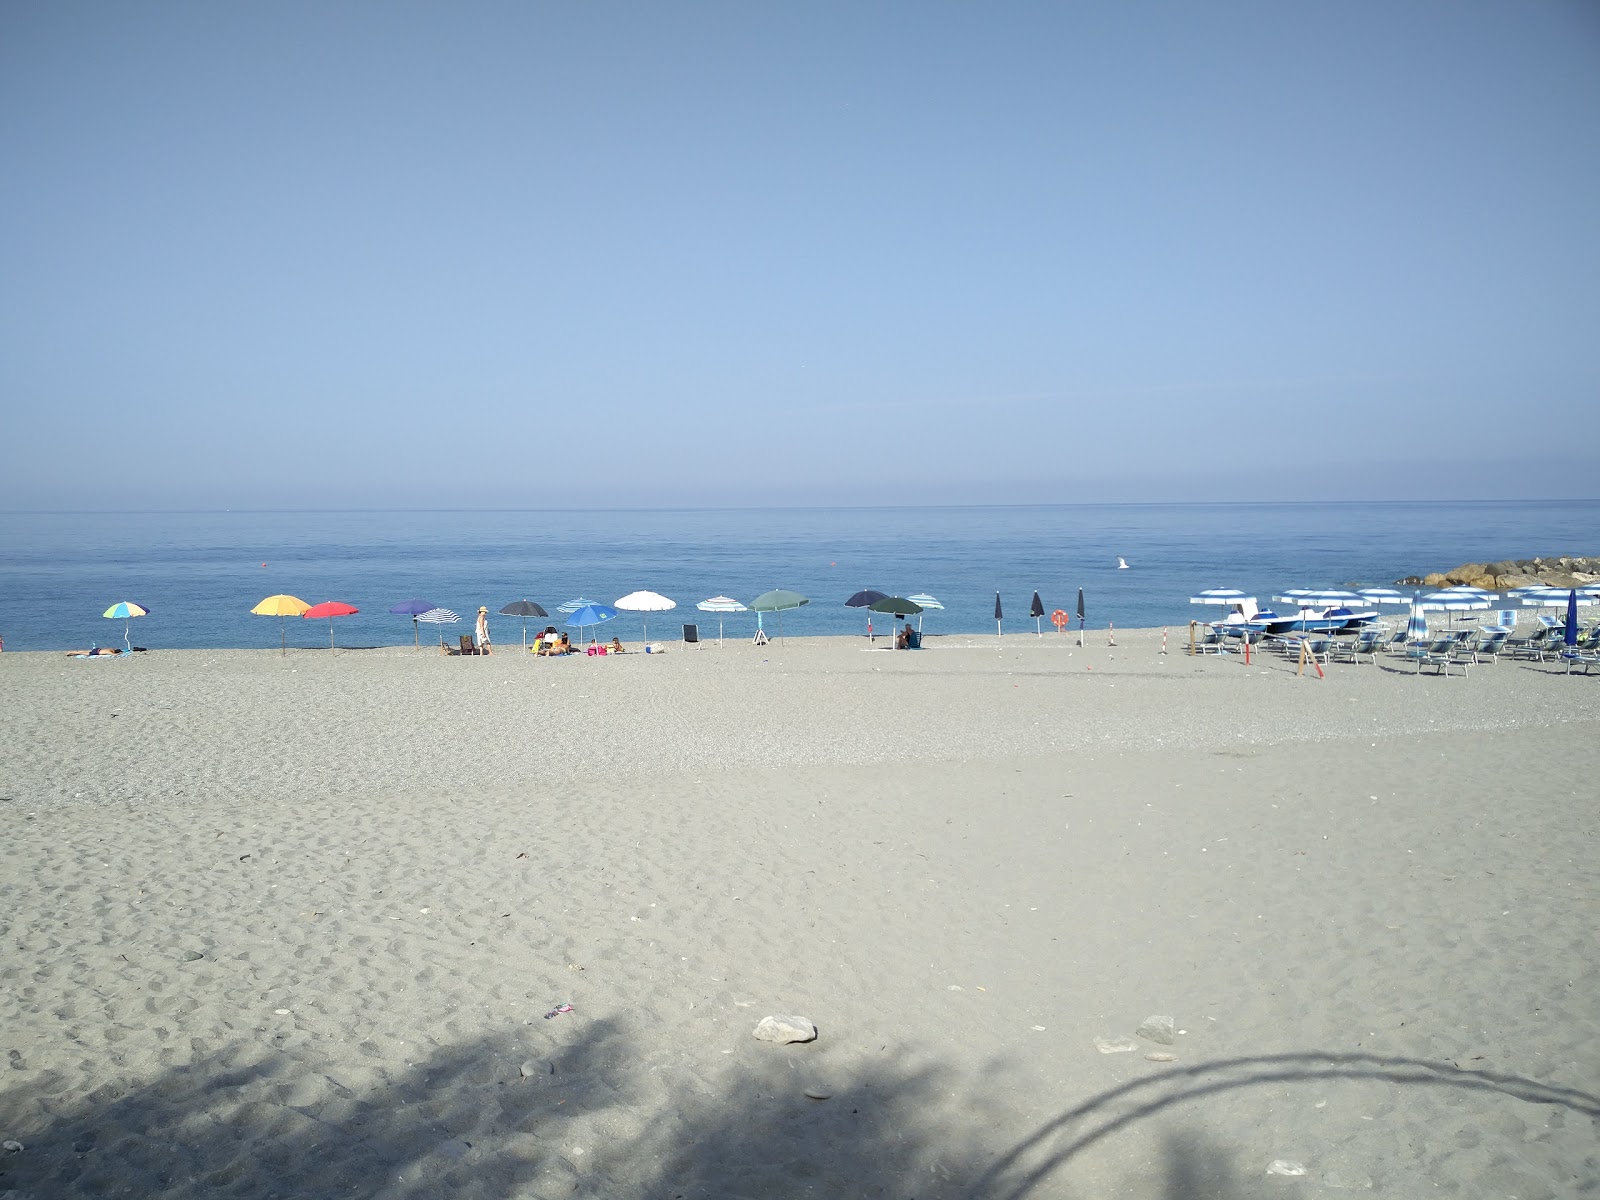 Foto von Spiaggia Amantea - beliebter Ort unter Entspannungskennern